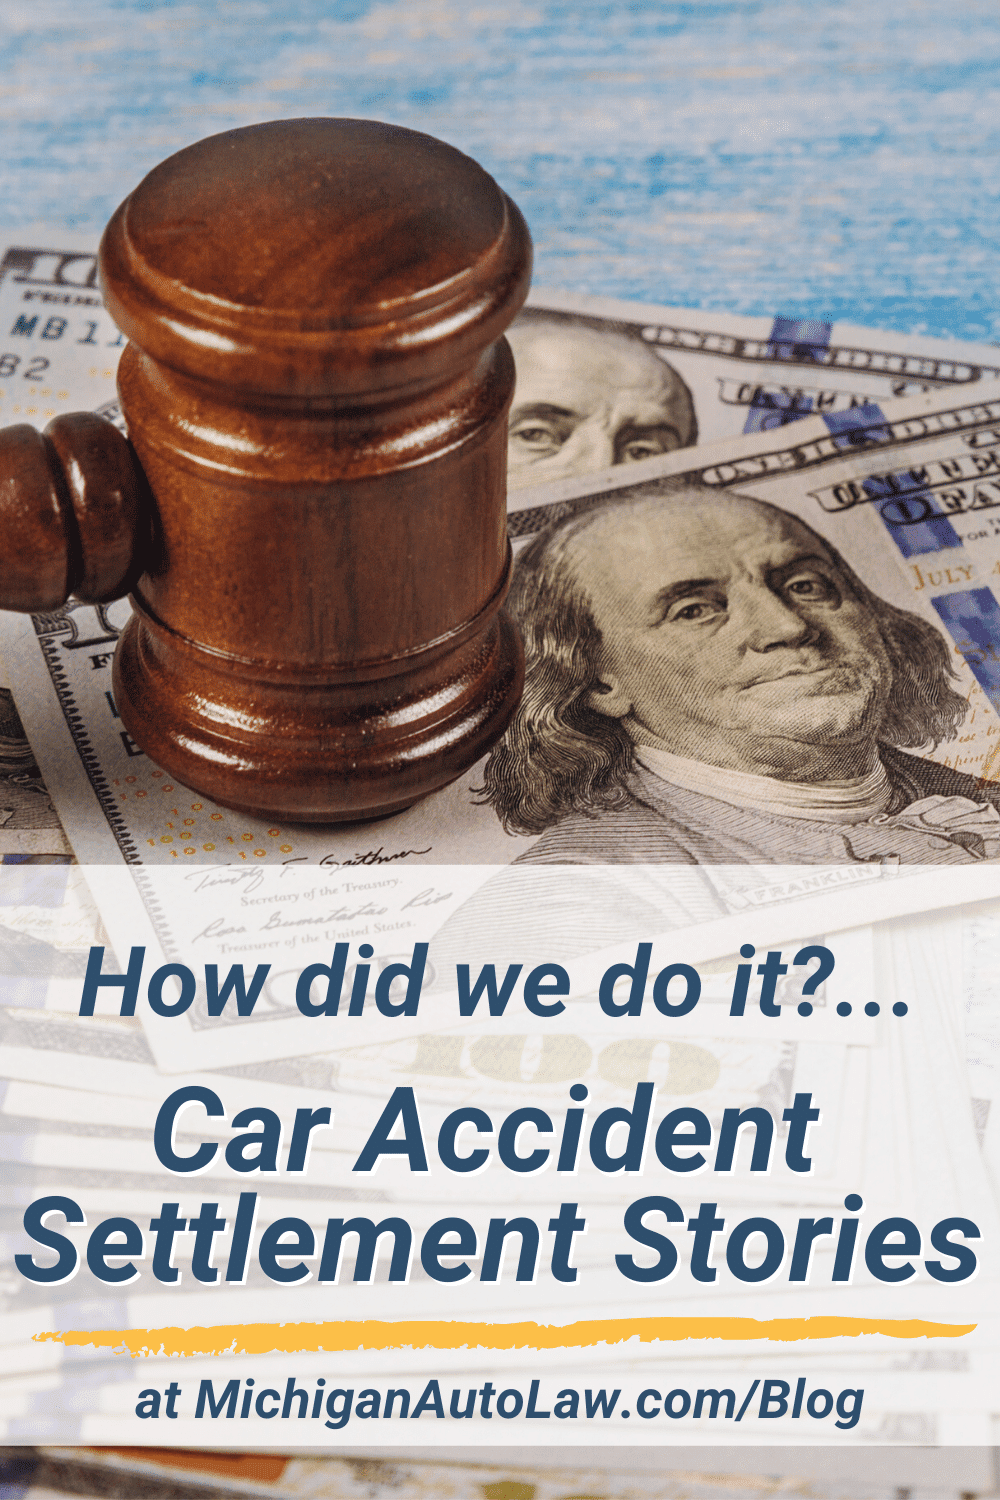 Michigan Car Accident Settlement Stories: Client Successes & Settlement Amounts